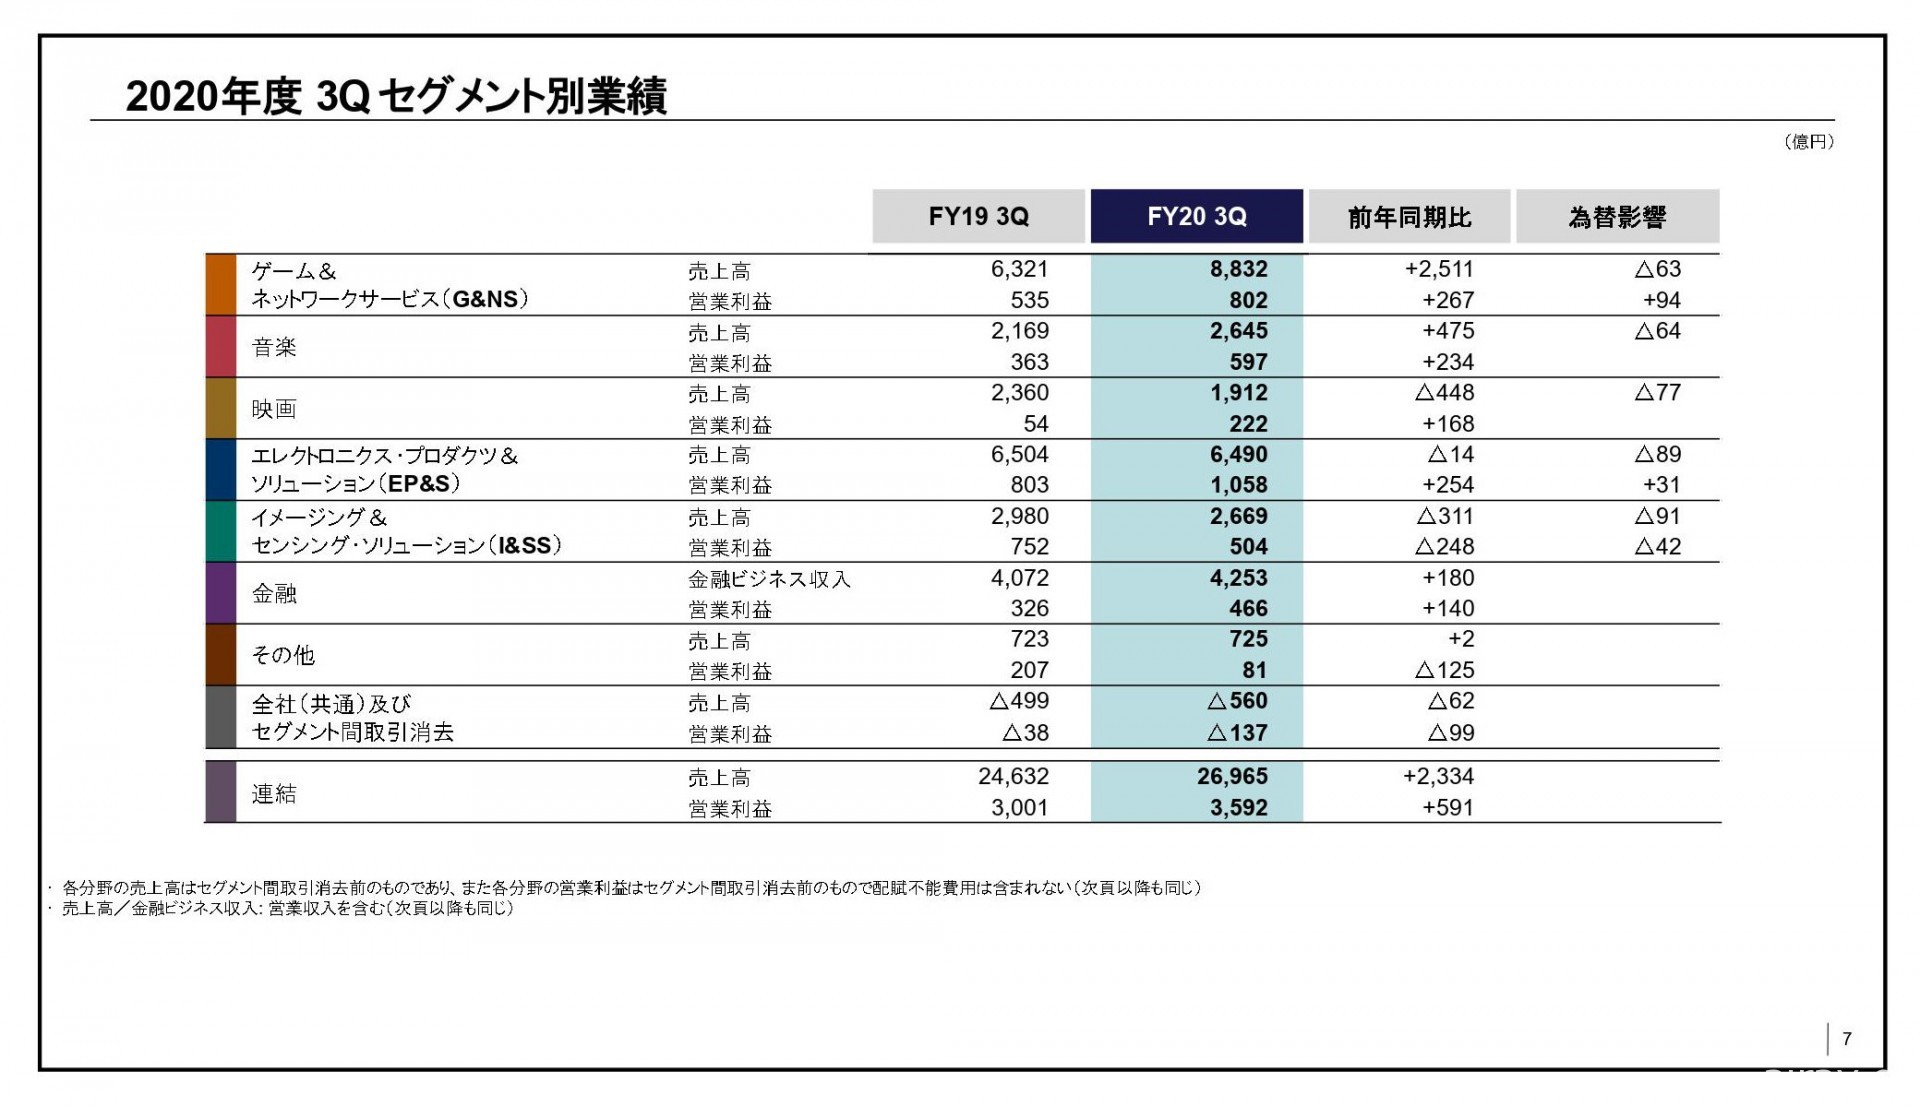 Sony 公布 2020 年第 3 季財報 新主機 PS5 上市帶動遊戲事業營收大幅成長